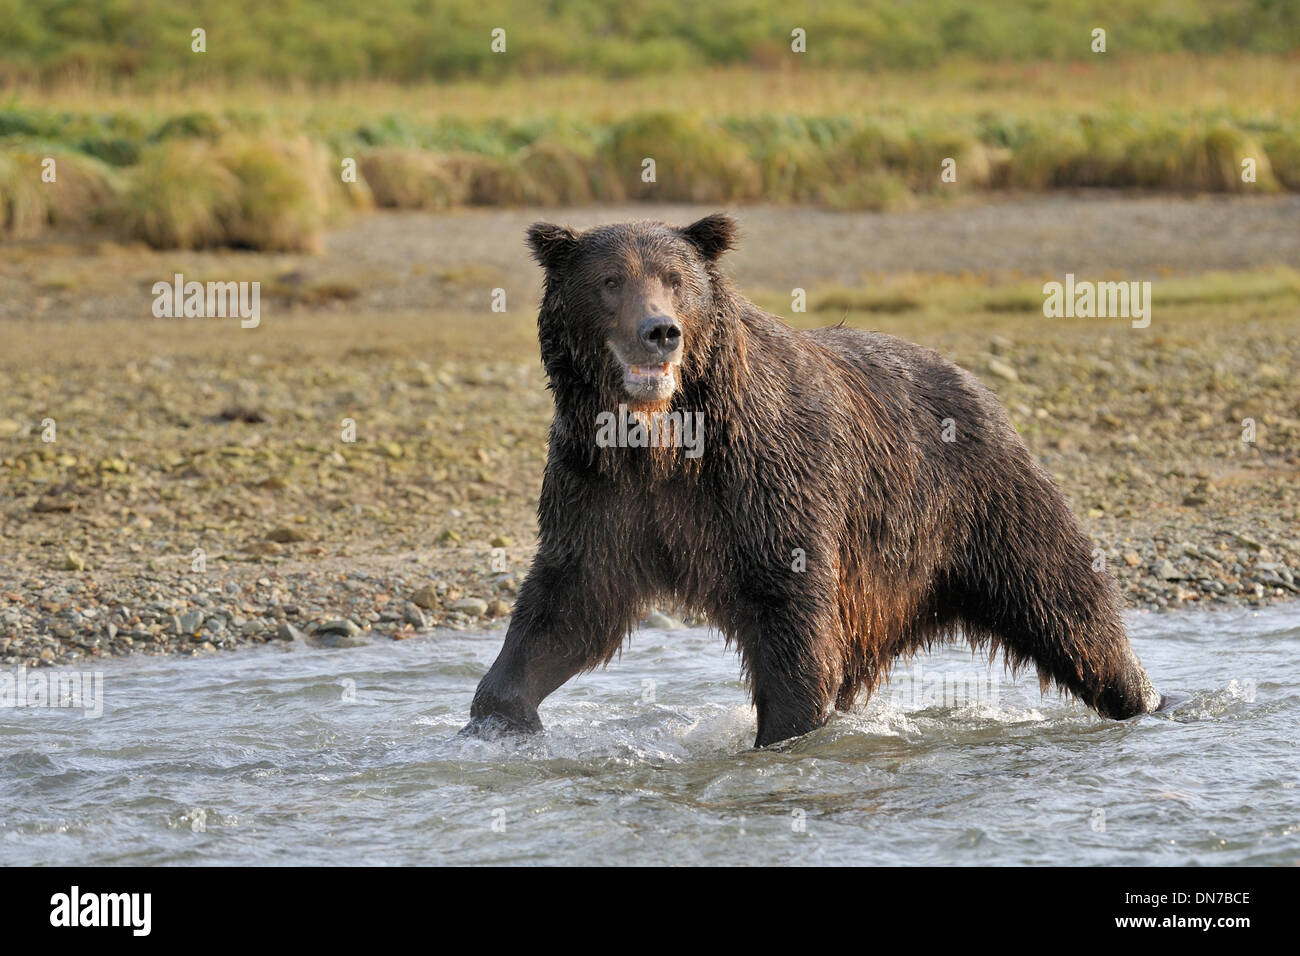 Grizzly bear (Ursus arctos) fishing in river, Katmai national park, Alaska, USA. Stock Photo